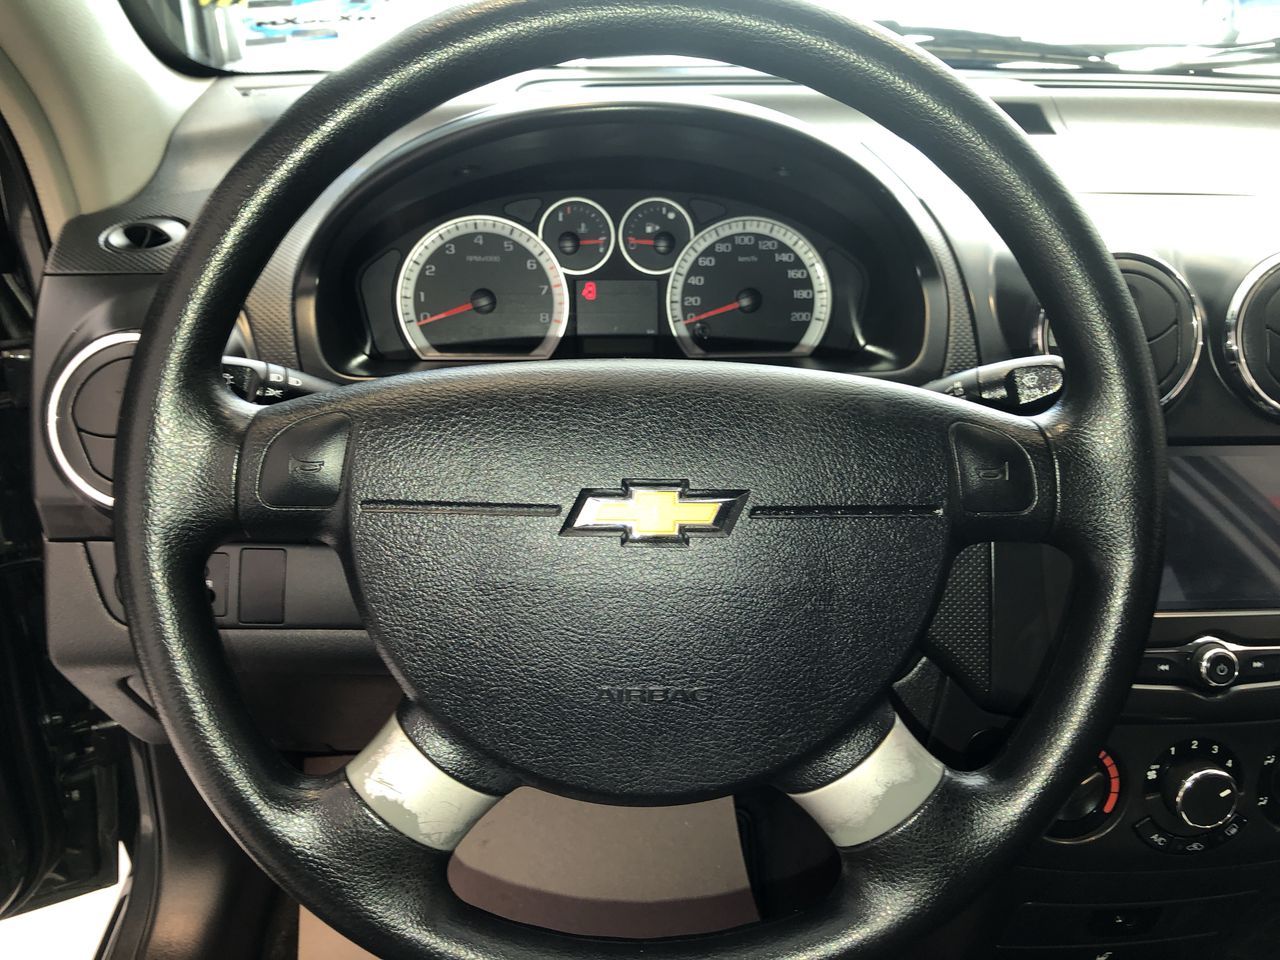 Chevrolet Aveo 2018